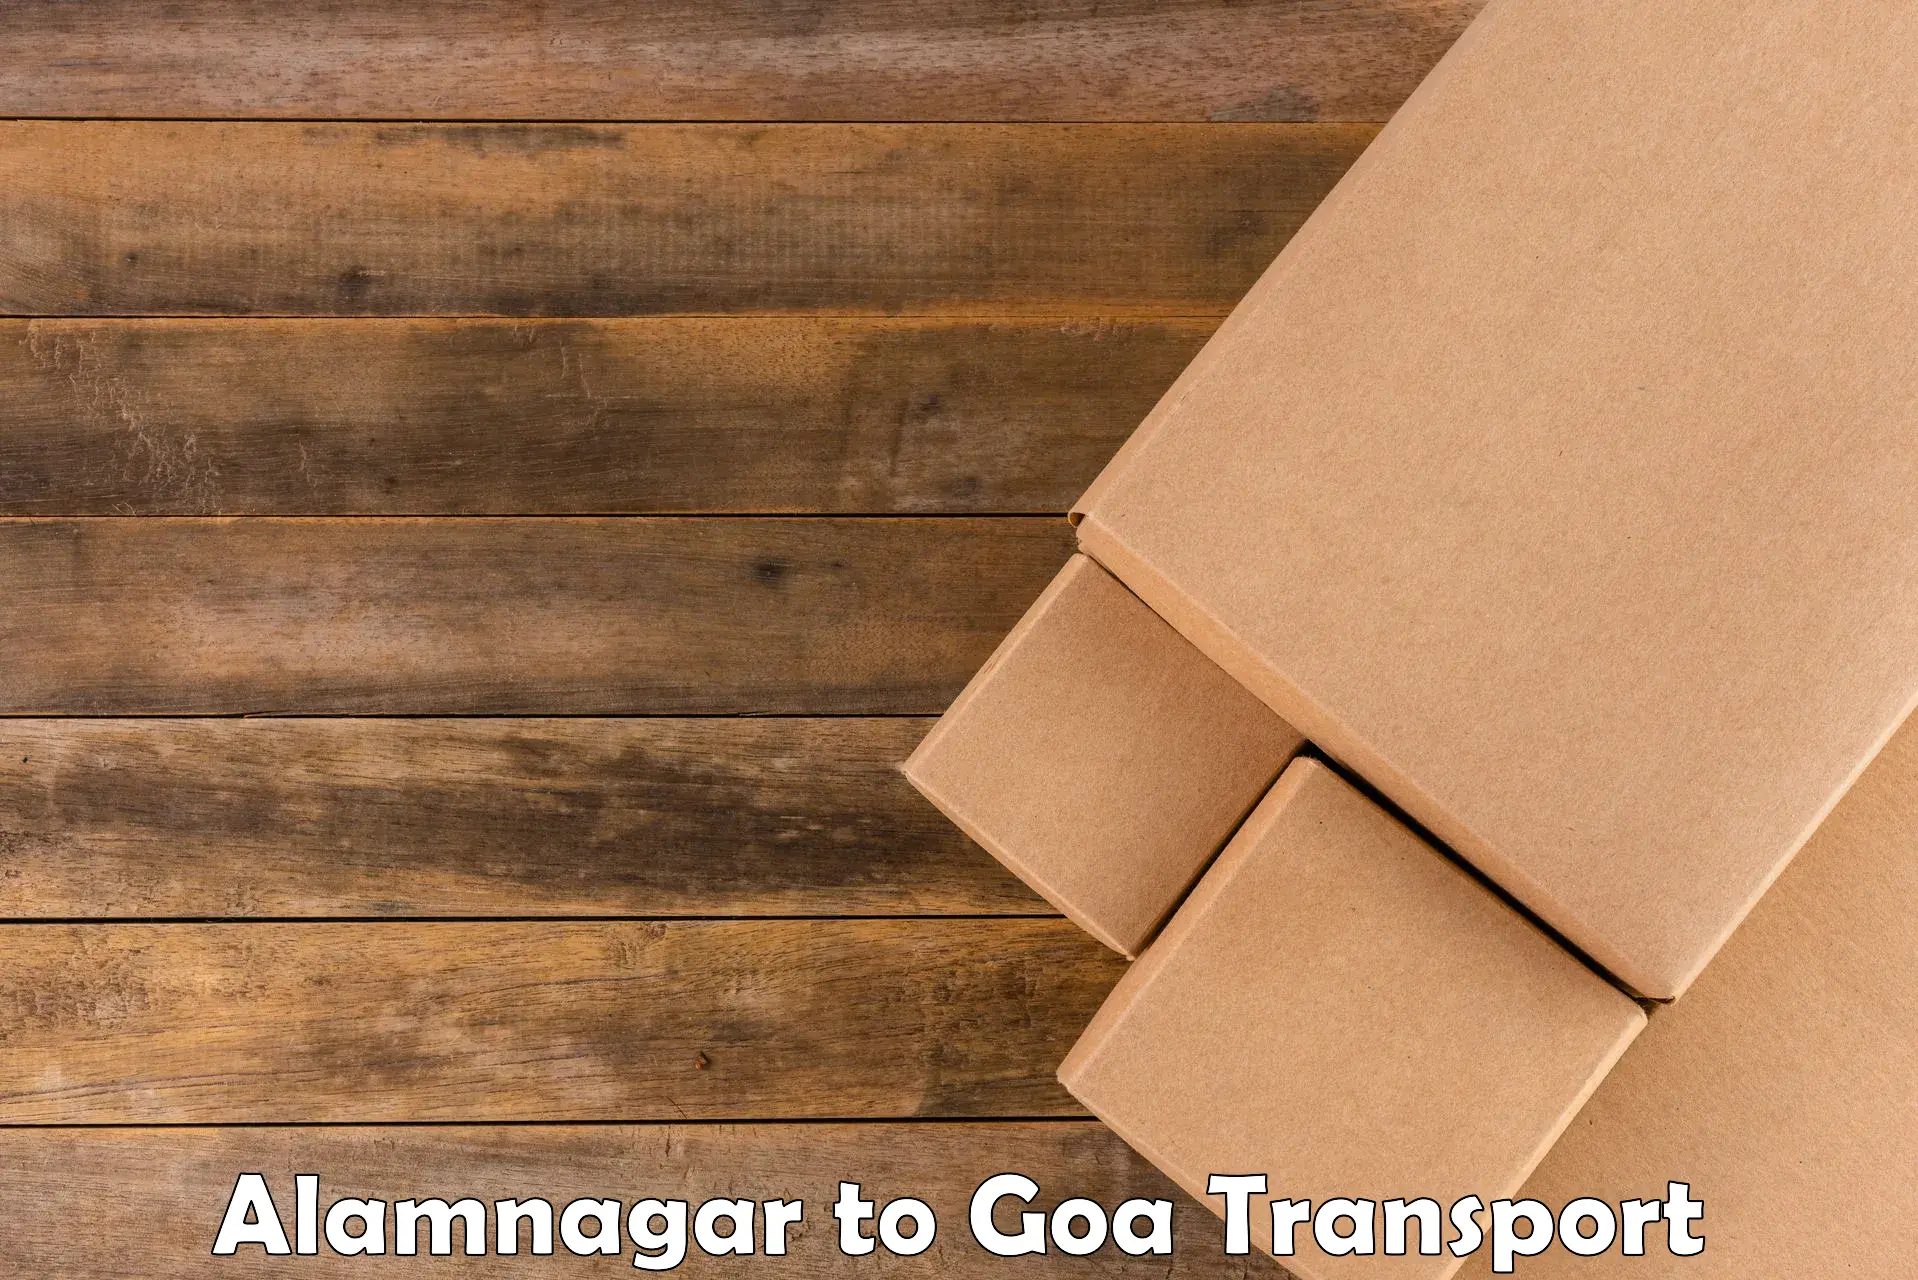 Online transport service Alamnagar to Mormugao Port